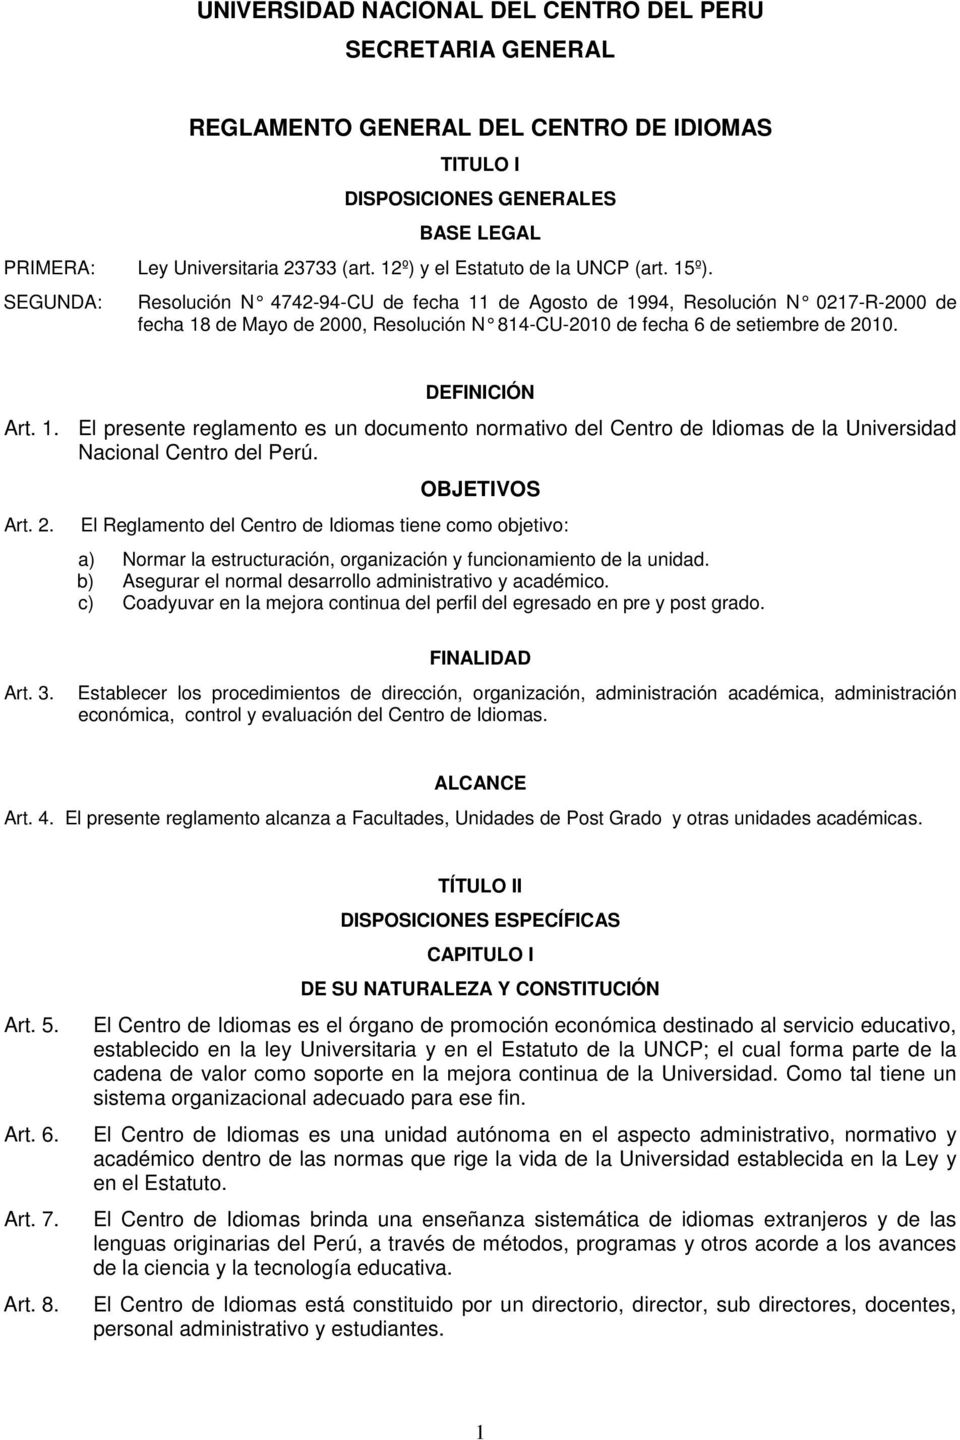 SEGUNDA: Resolución N 4742-94-CU de fecha 11 de Agosto de 1994, Resolución N 0217-R-2000 de fecha 18 de Mayo de 2000, Resolución N 814-CU-2010 de fecha 6 de setiembre de 2010. DEFINICIÓN Art. 1. El presente reglamento es un documento normativo del Centro de Idiomas de la Universidad Nacional Centro del Perú.